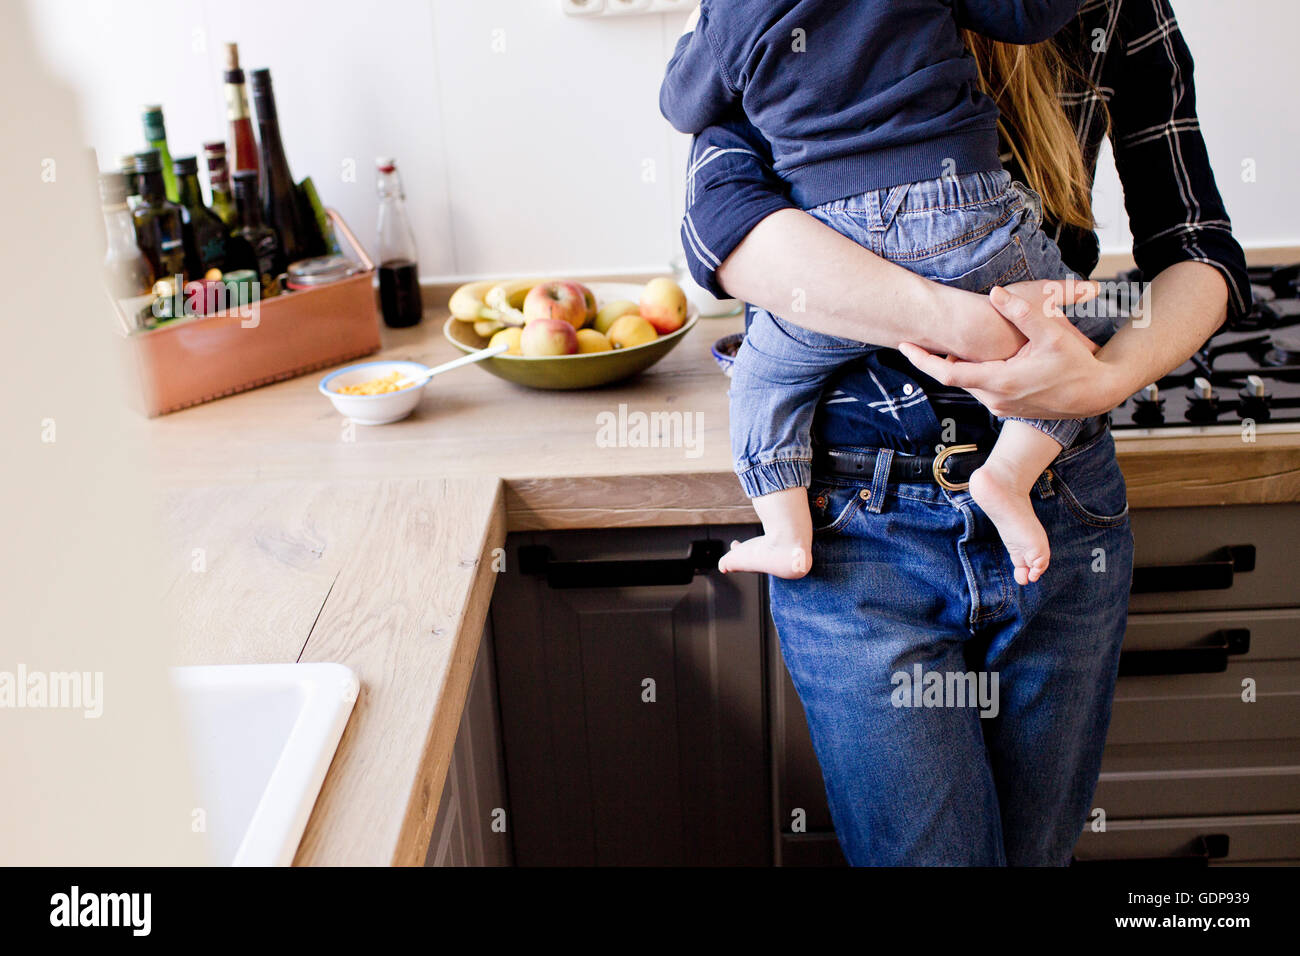 Beschnitten, Aufnahme Mitte Erwachsene Frau mit Baby Sohn in Küche Stockfoto